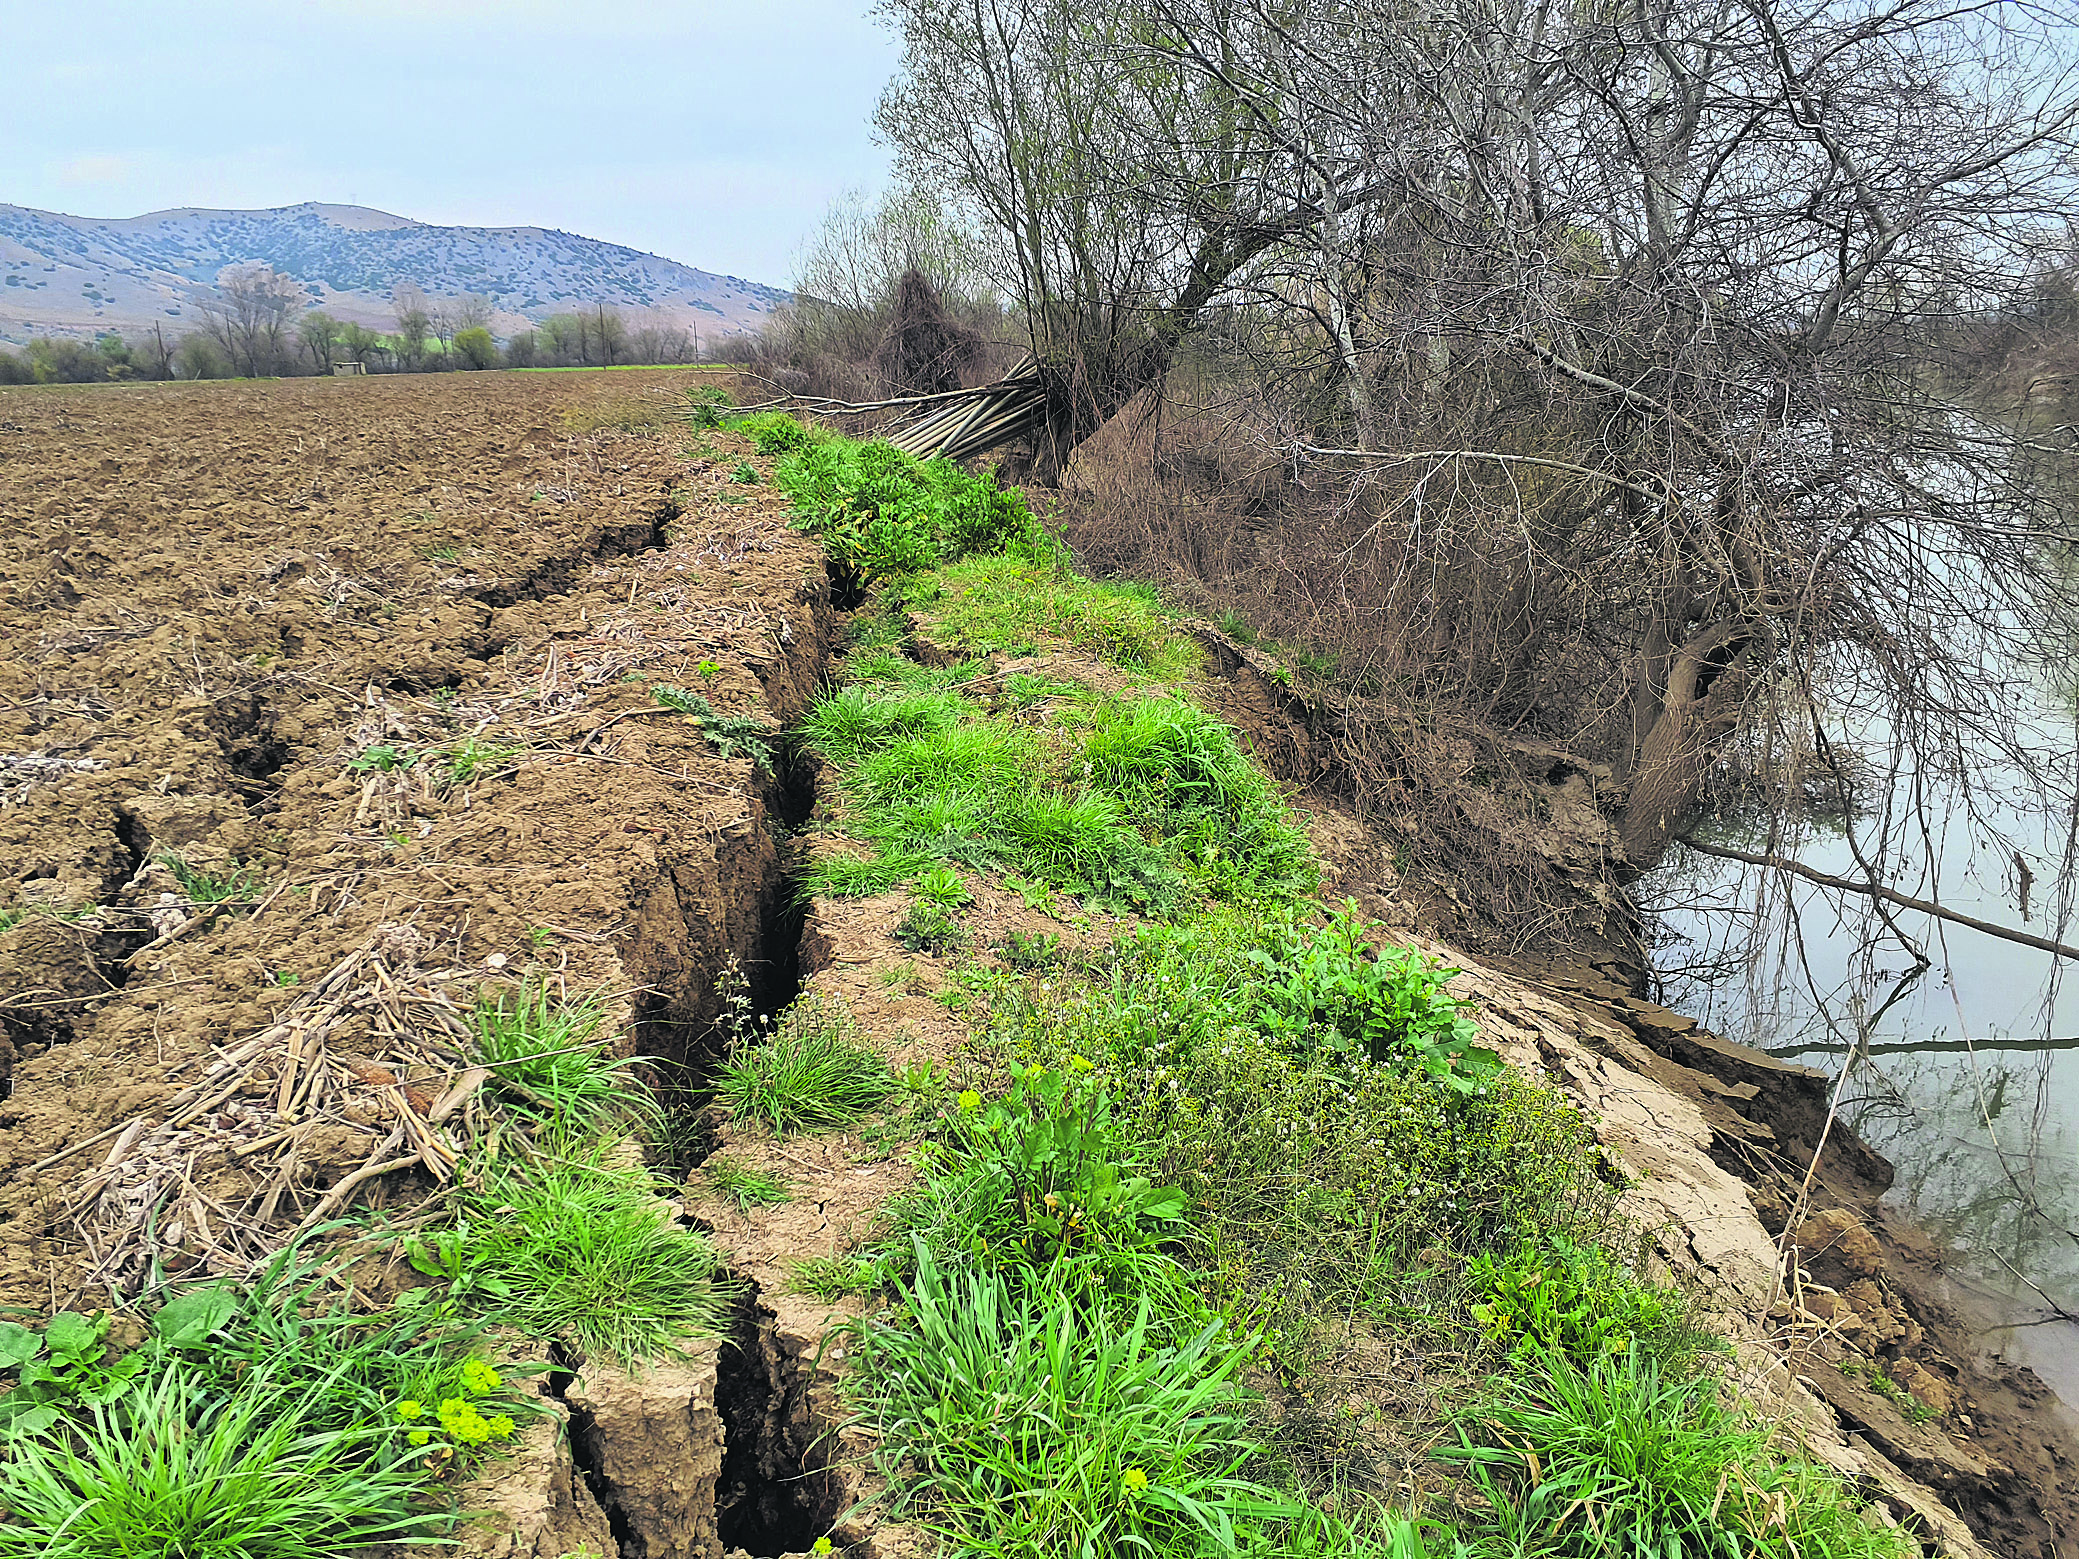 Ερευνα: Ρευστοποίηση εδάφους ύστερα από τα 6,3 ρίχτερ στον Τύρναβο [εικόνες] - ΕΛΛΑΔΑ